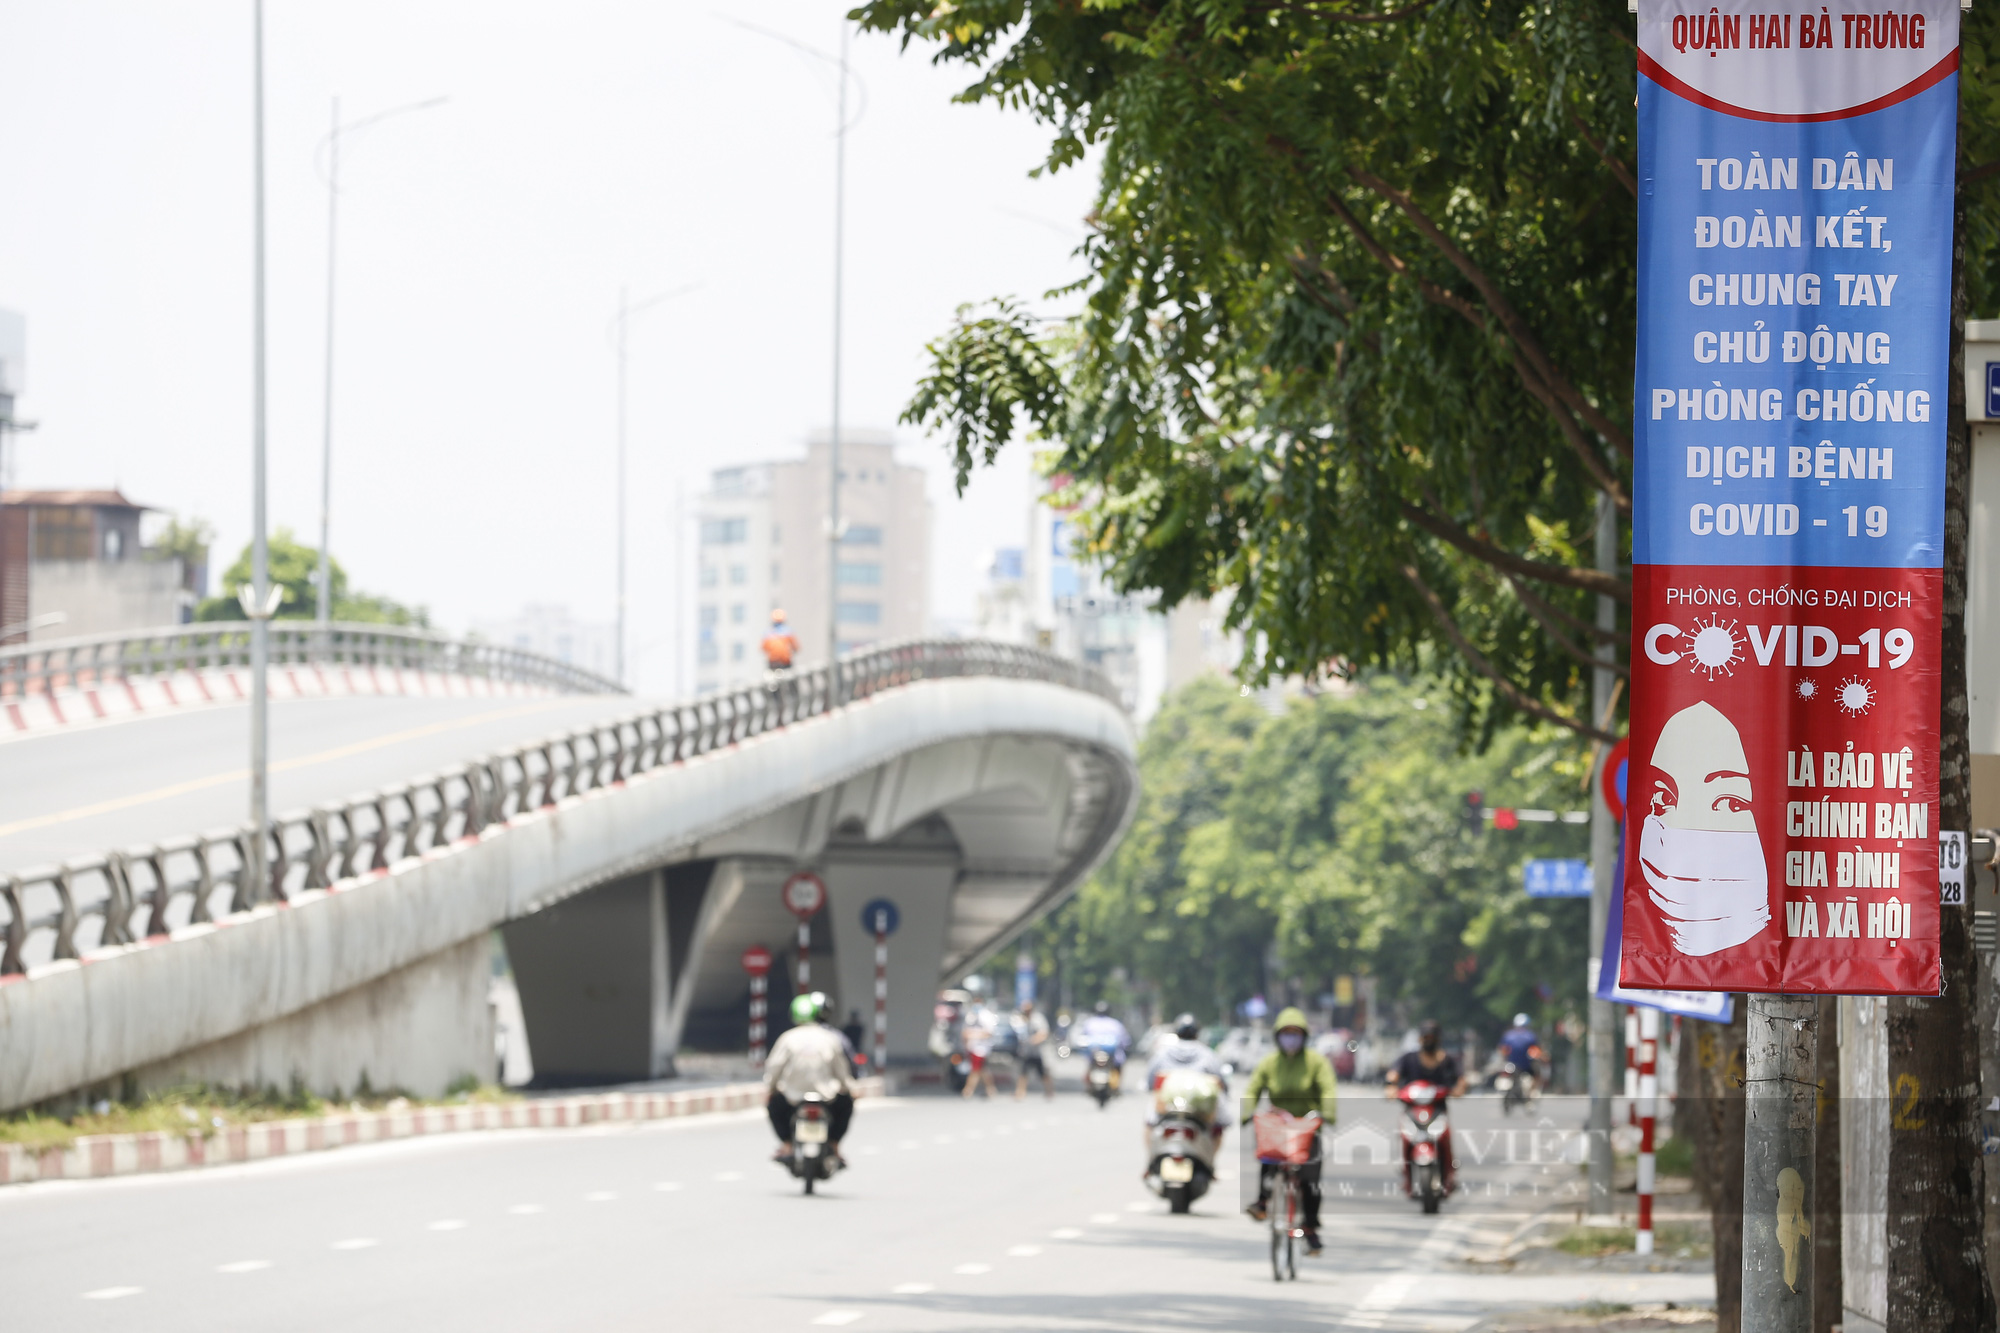 Đường phố Hà Nội xuất hiện những thông điệp tiếp thêm sức mạnh trong công tác phòng, chống Covid-19  - Ảnh 6.